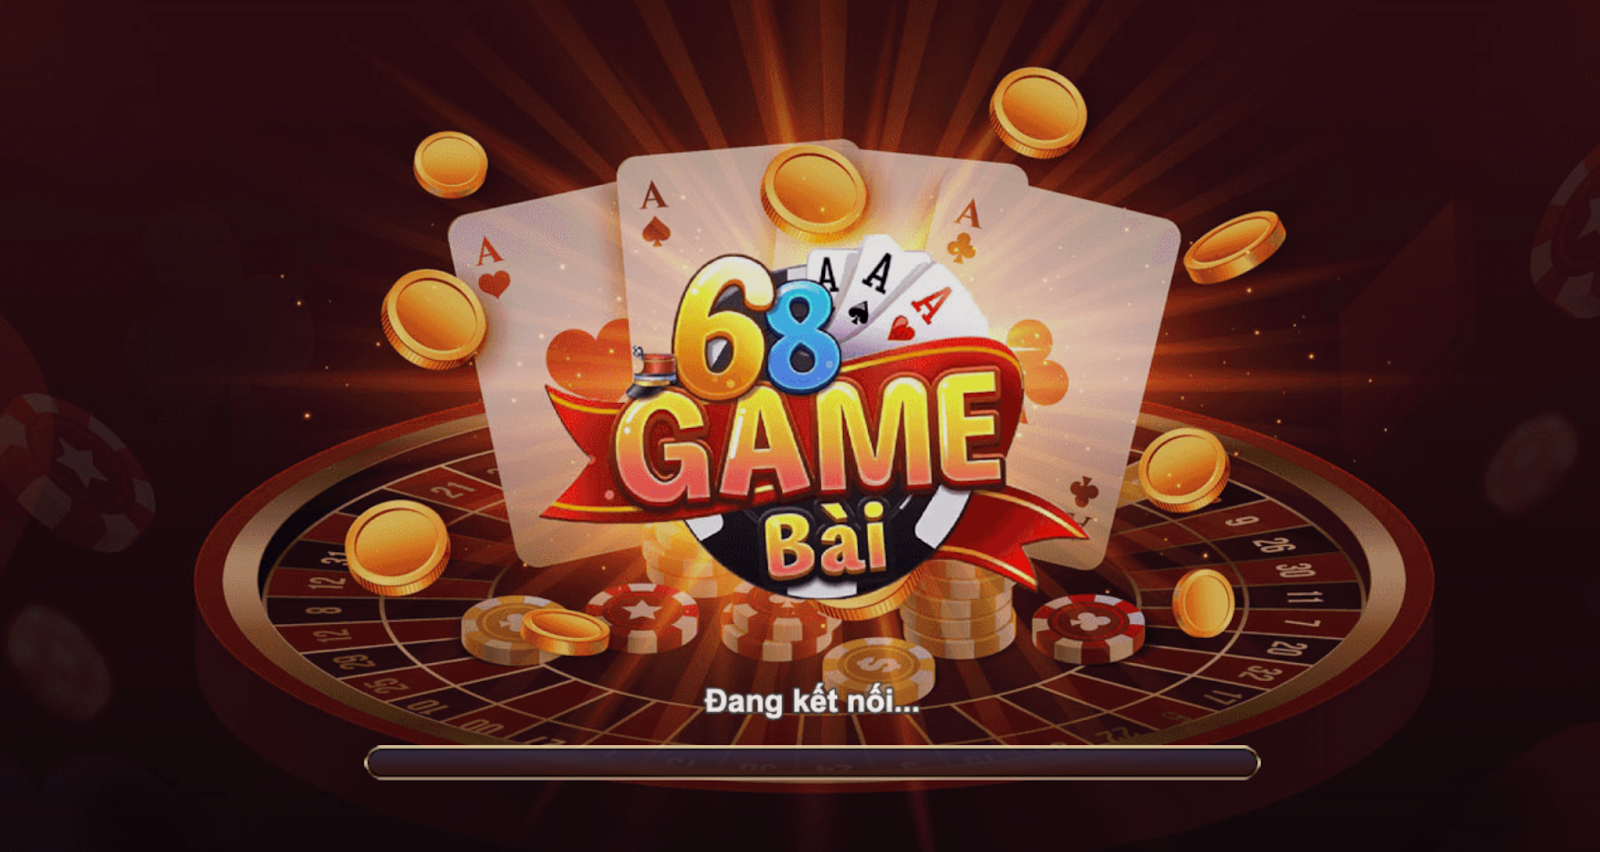 68gamebai cổng game – Địa điểm chơi tuyệt địa cầu sinh đỉnh cao